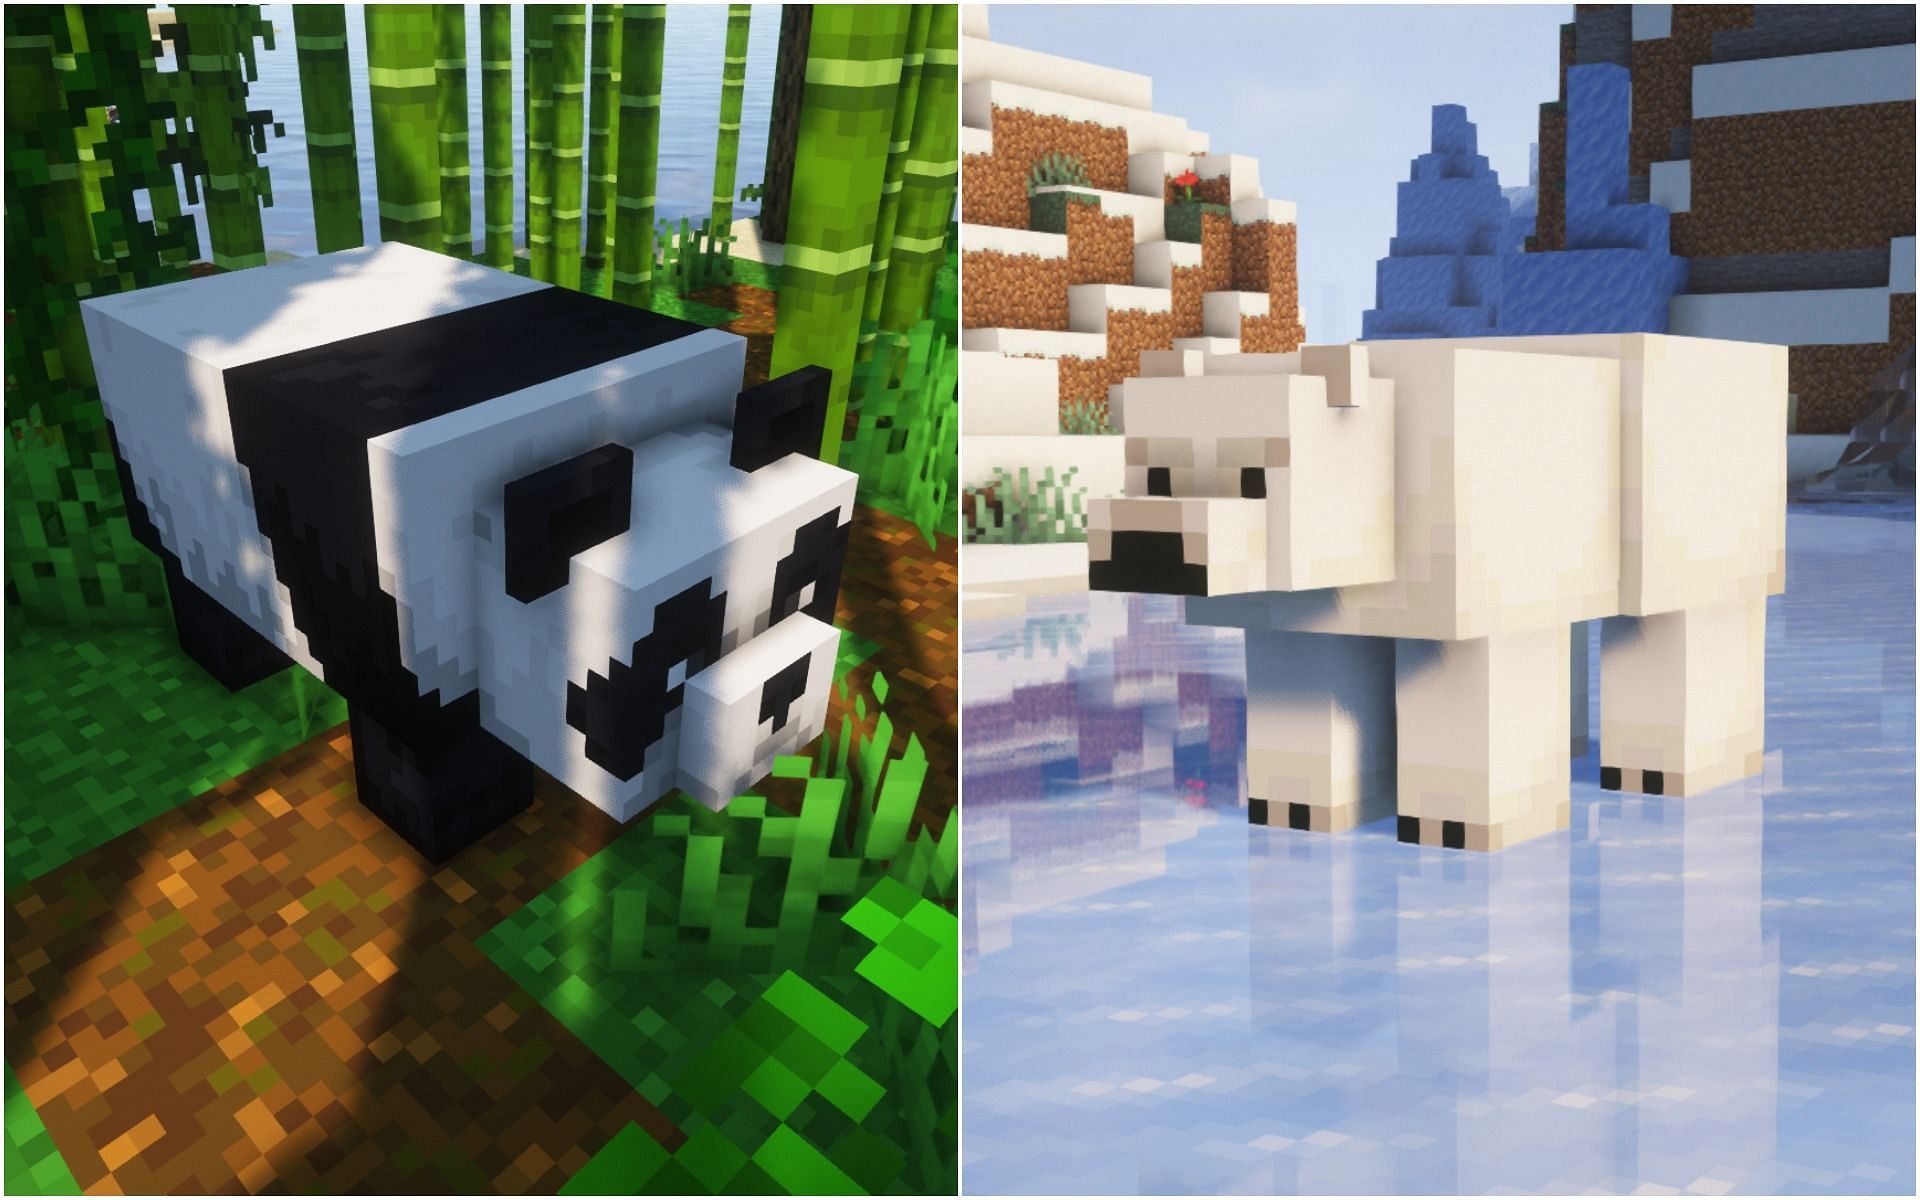 Panda versus Polar bear (Image via Minecraft)